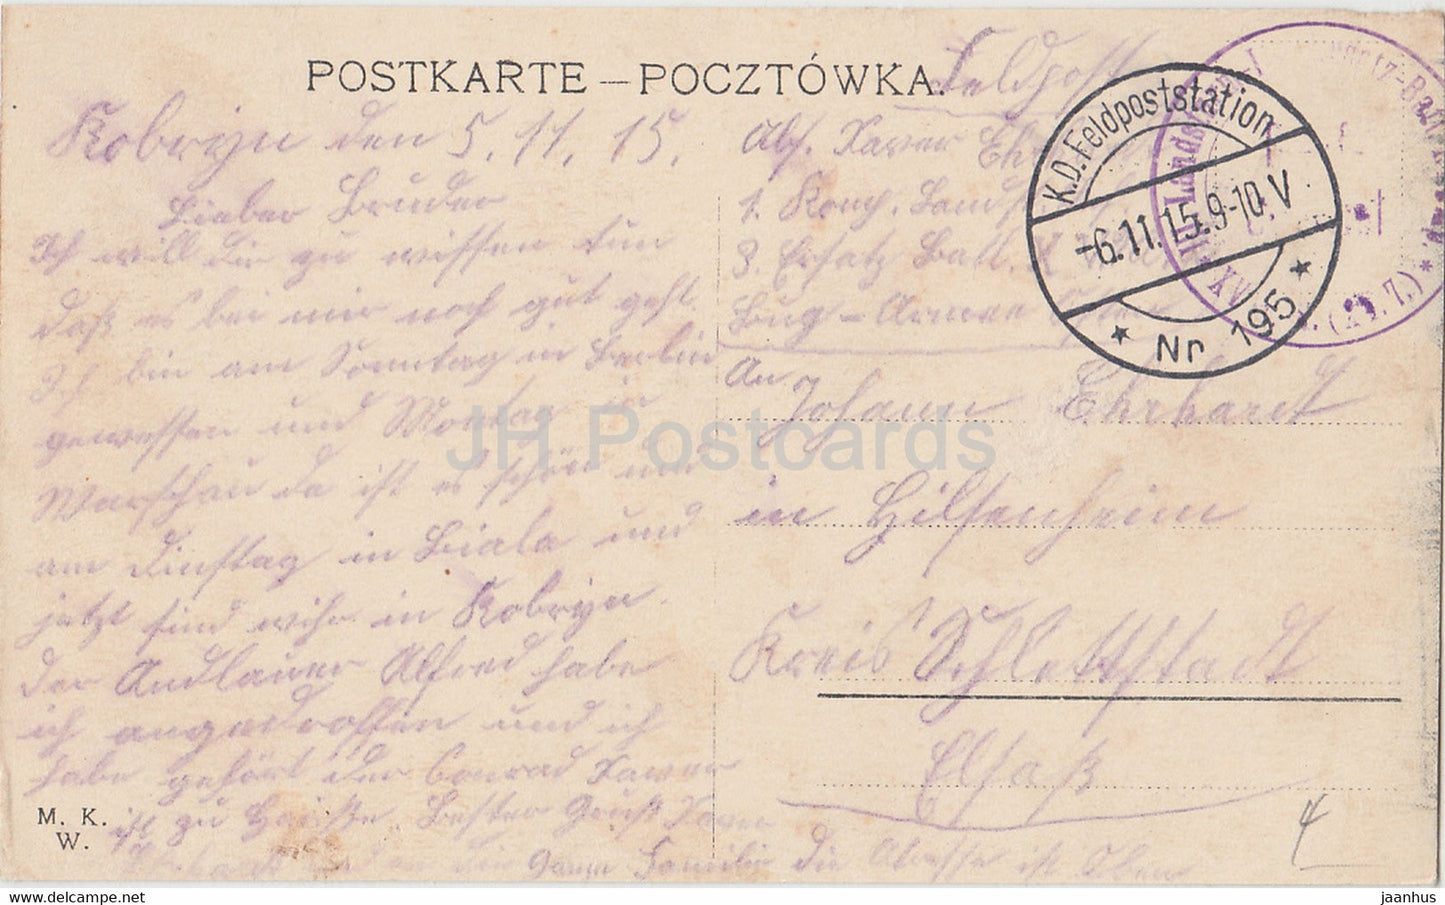 Warschau - Warszawa - Wierzbowastr - ul Wierzbowa - Feldpost - carte postale ancienne - 1915 - Pologne - utilisé